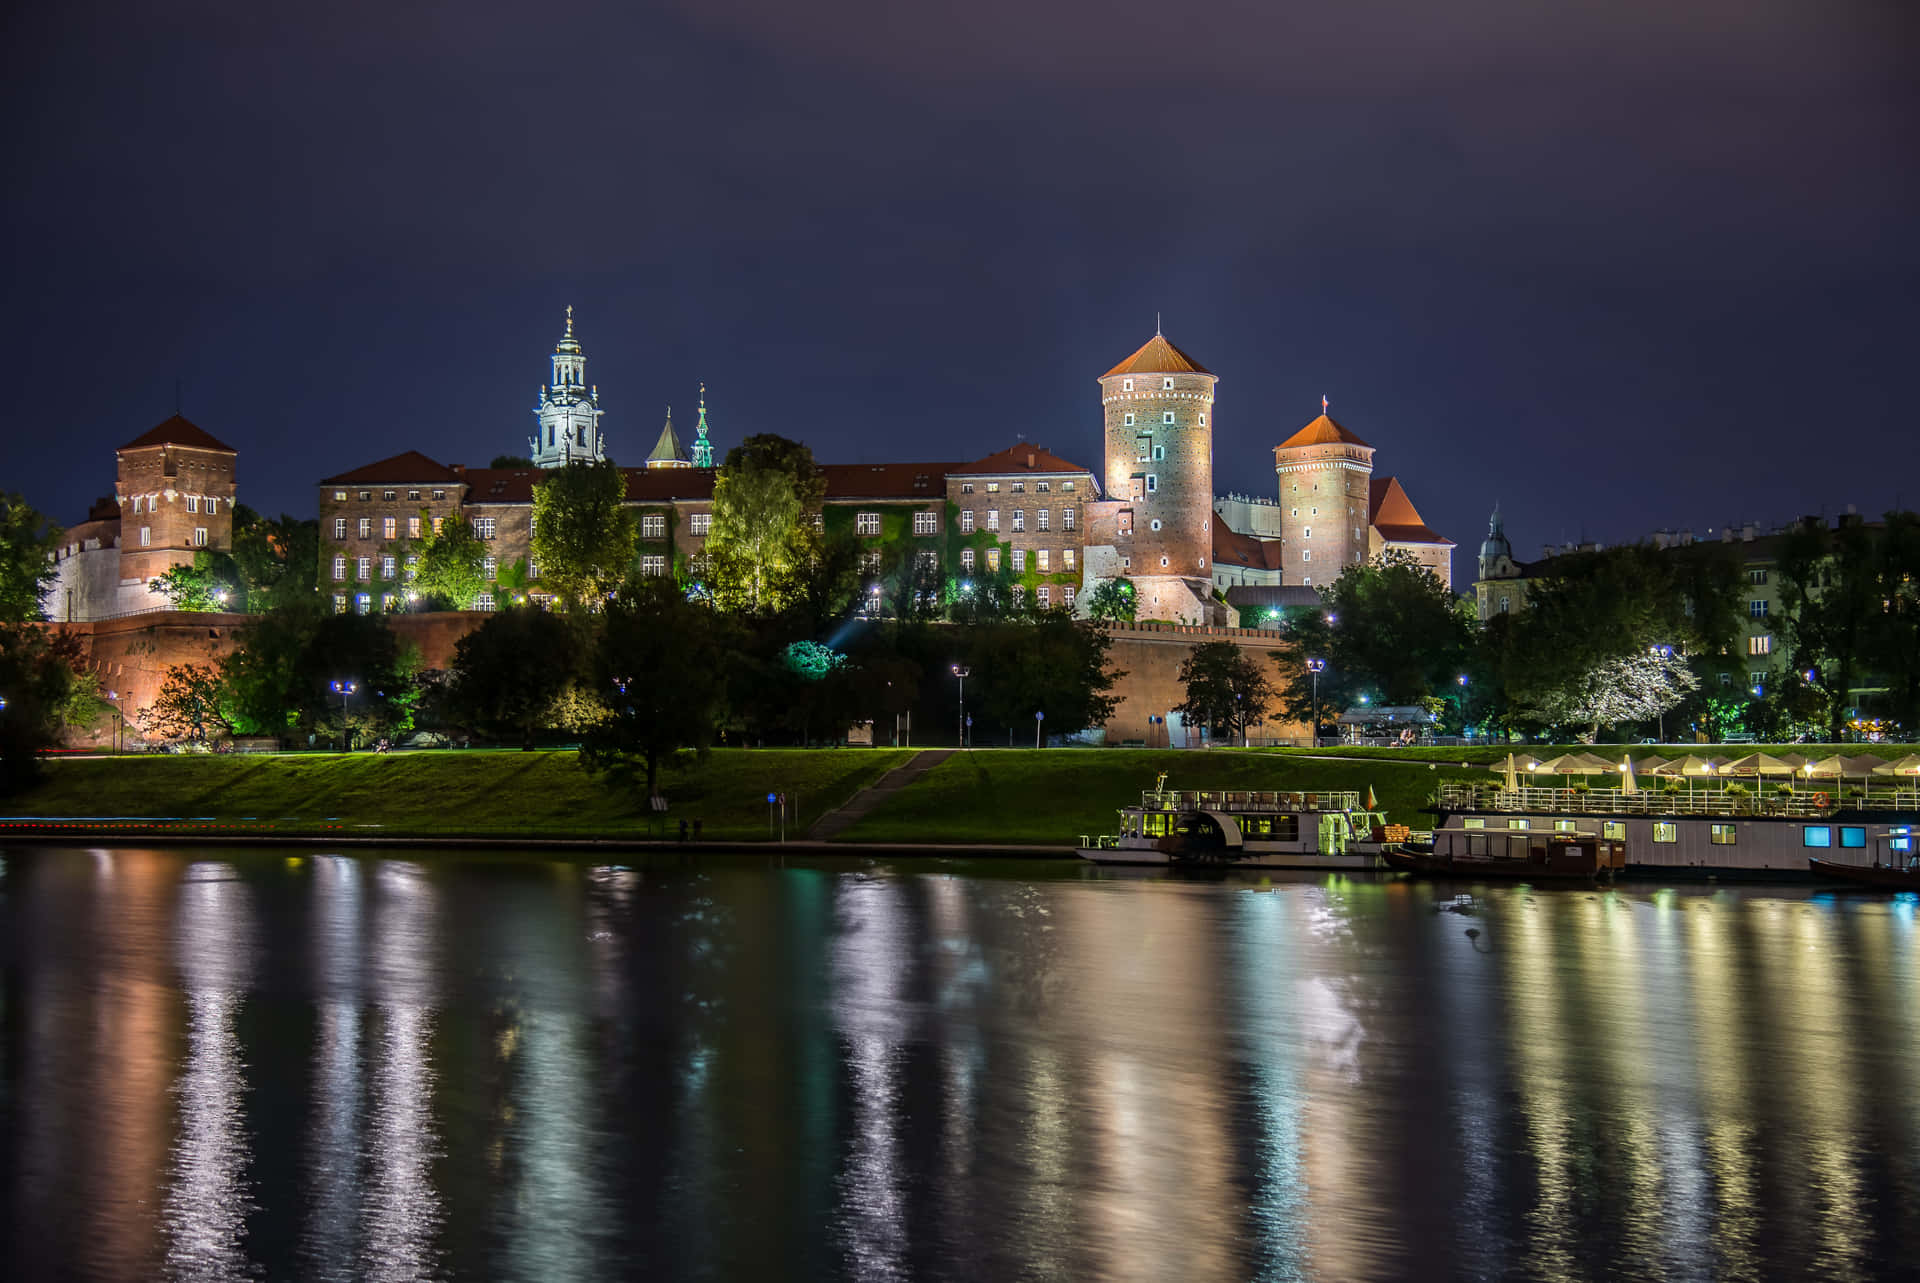 Wawel Castle Night River Reflections Wallpaper